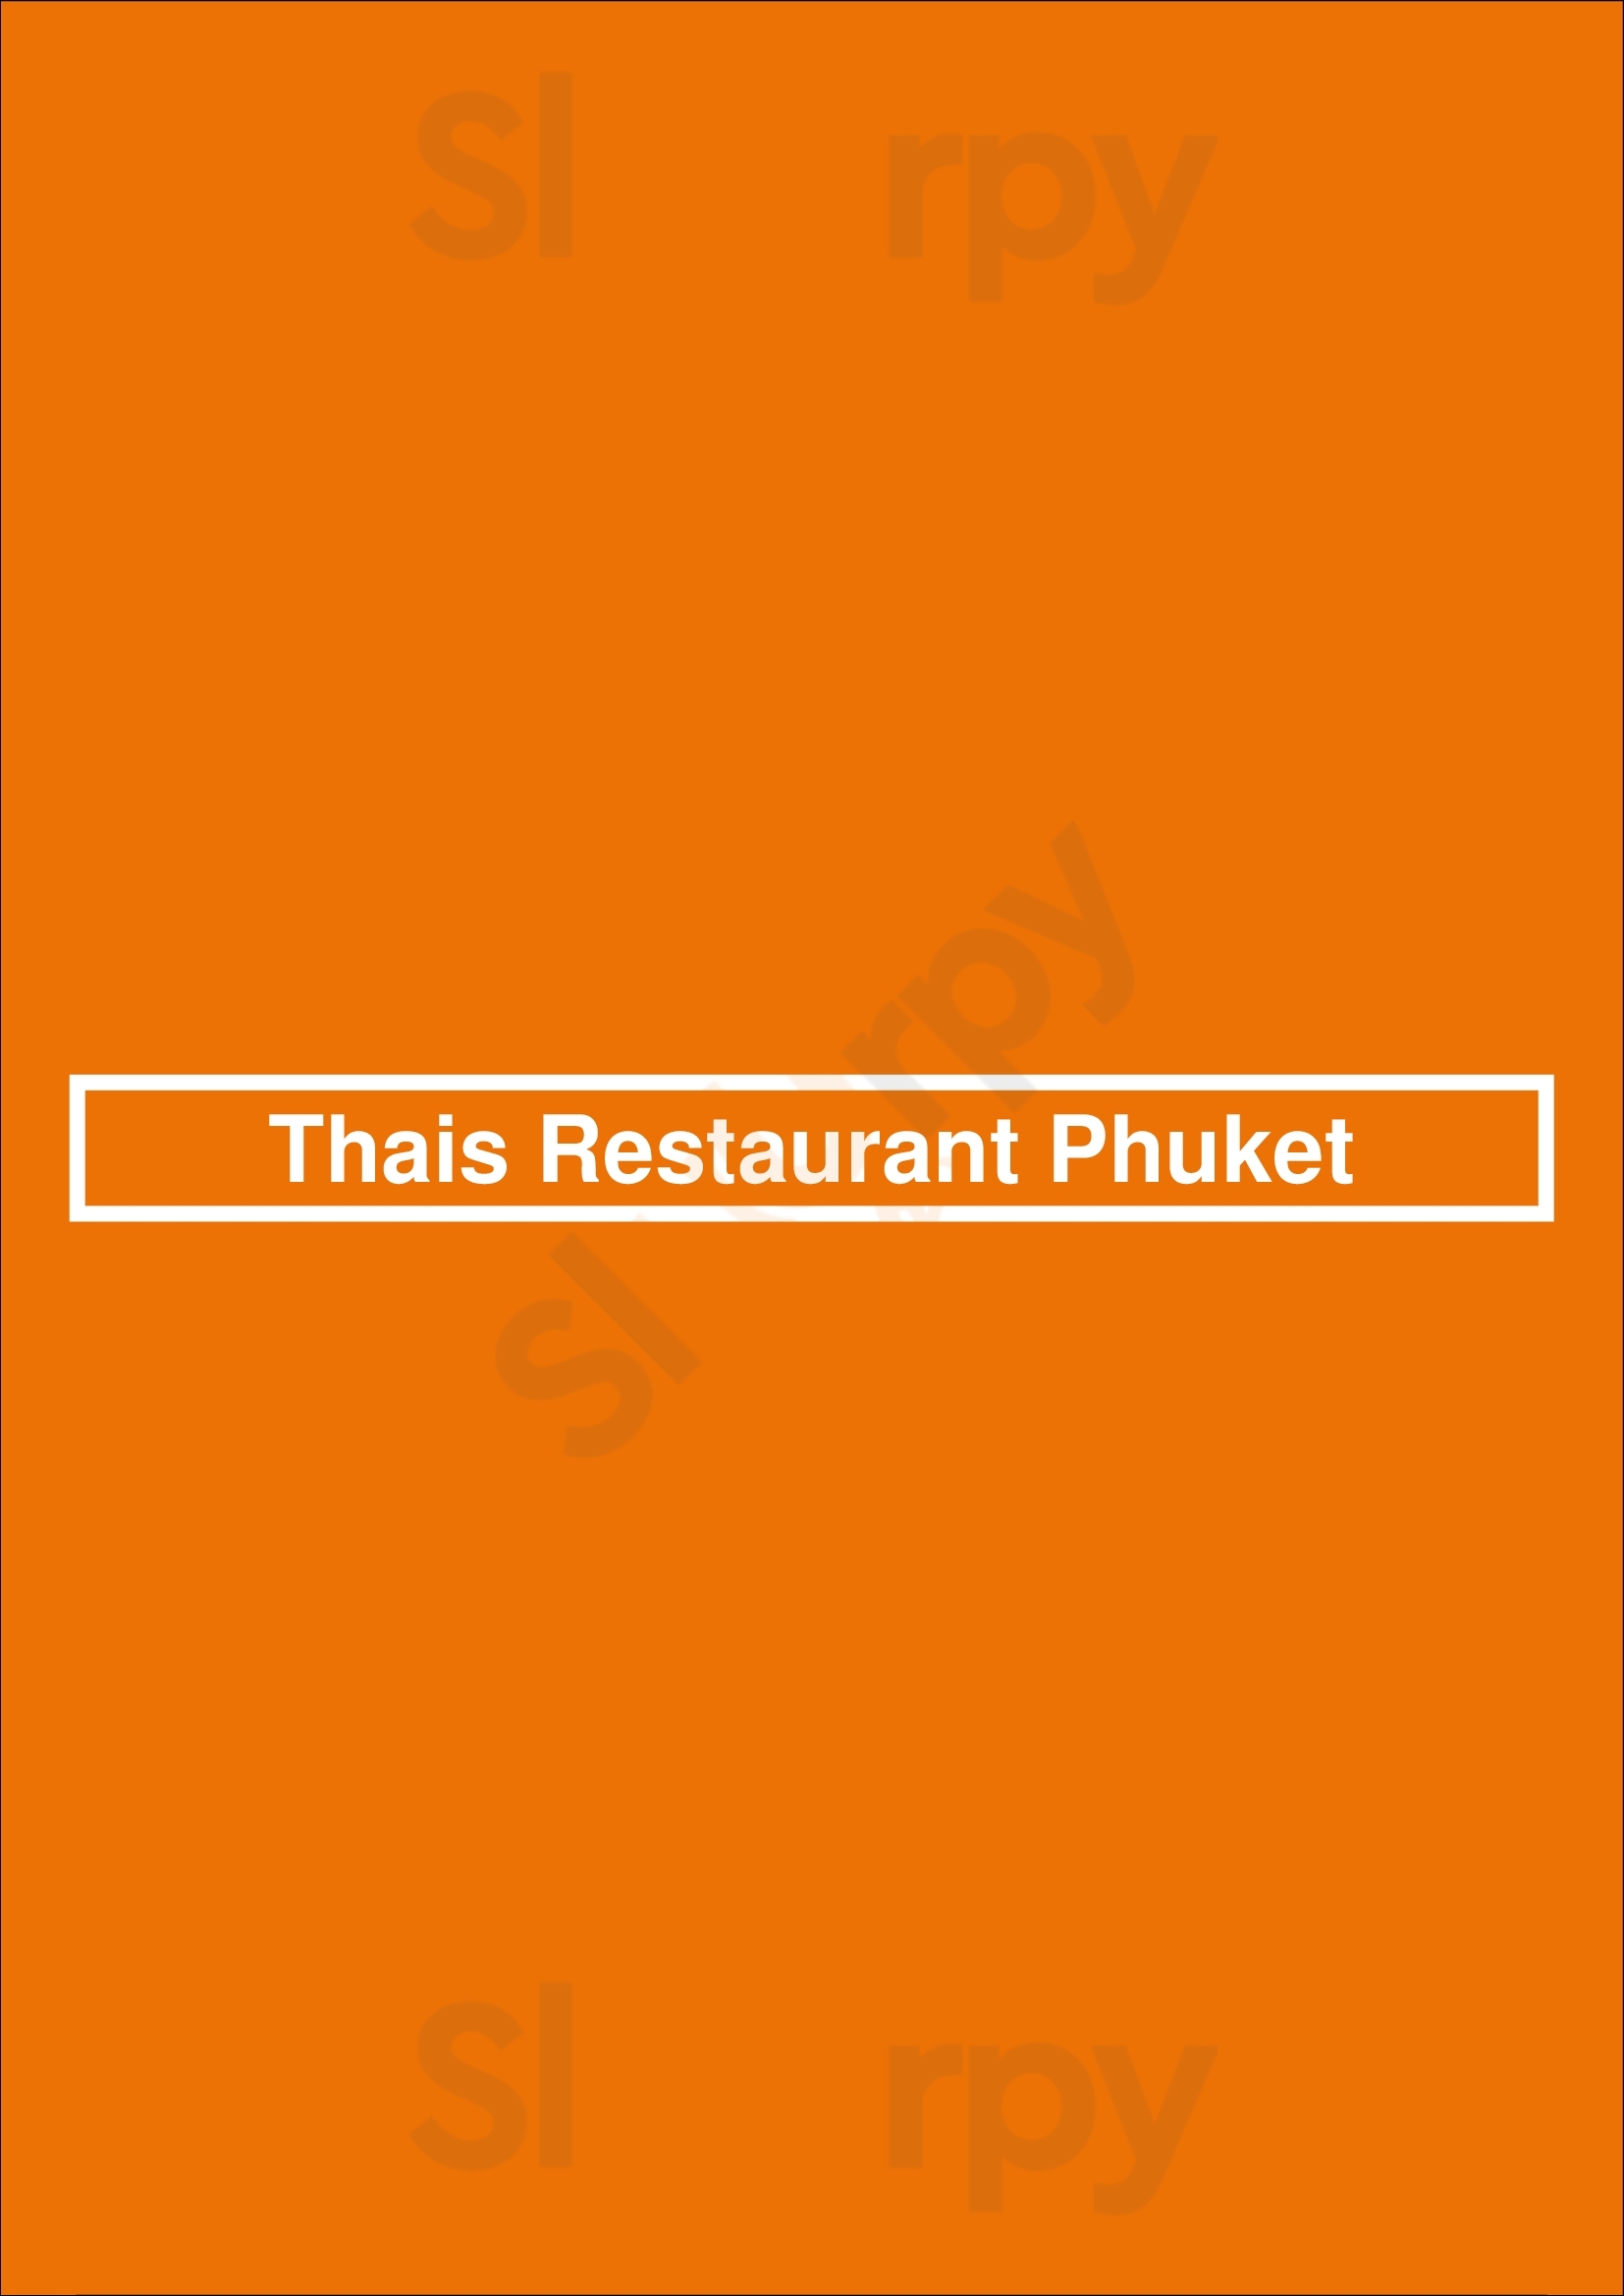 Thais Restaurant Phuket Scheveningen Menu - 1